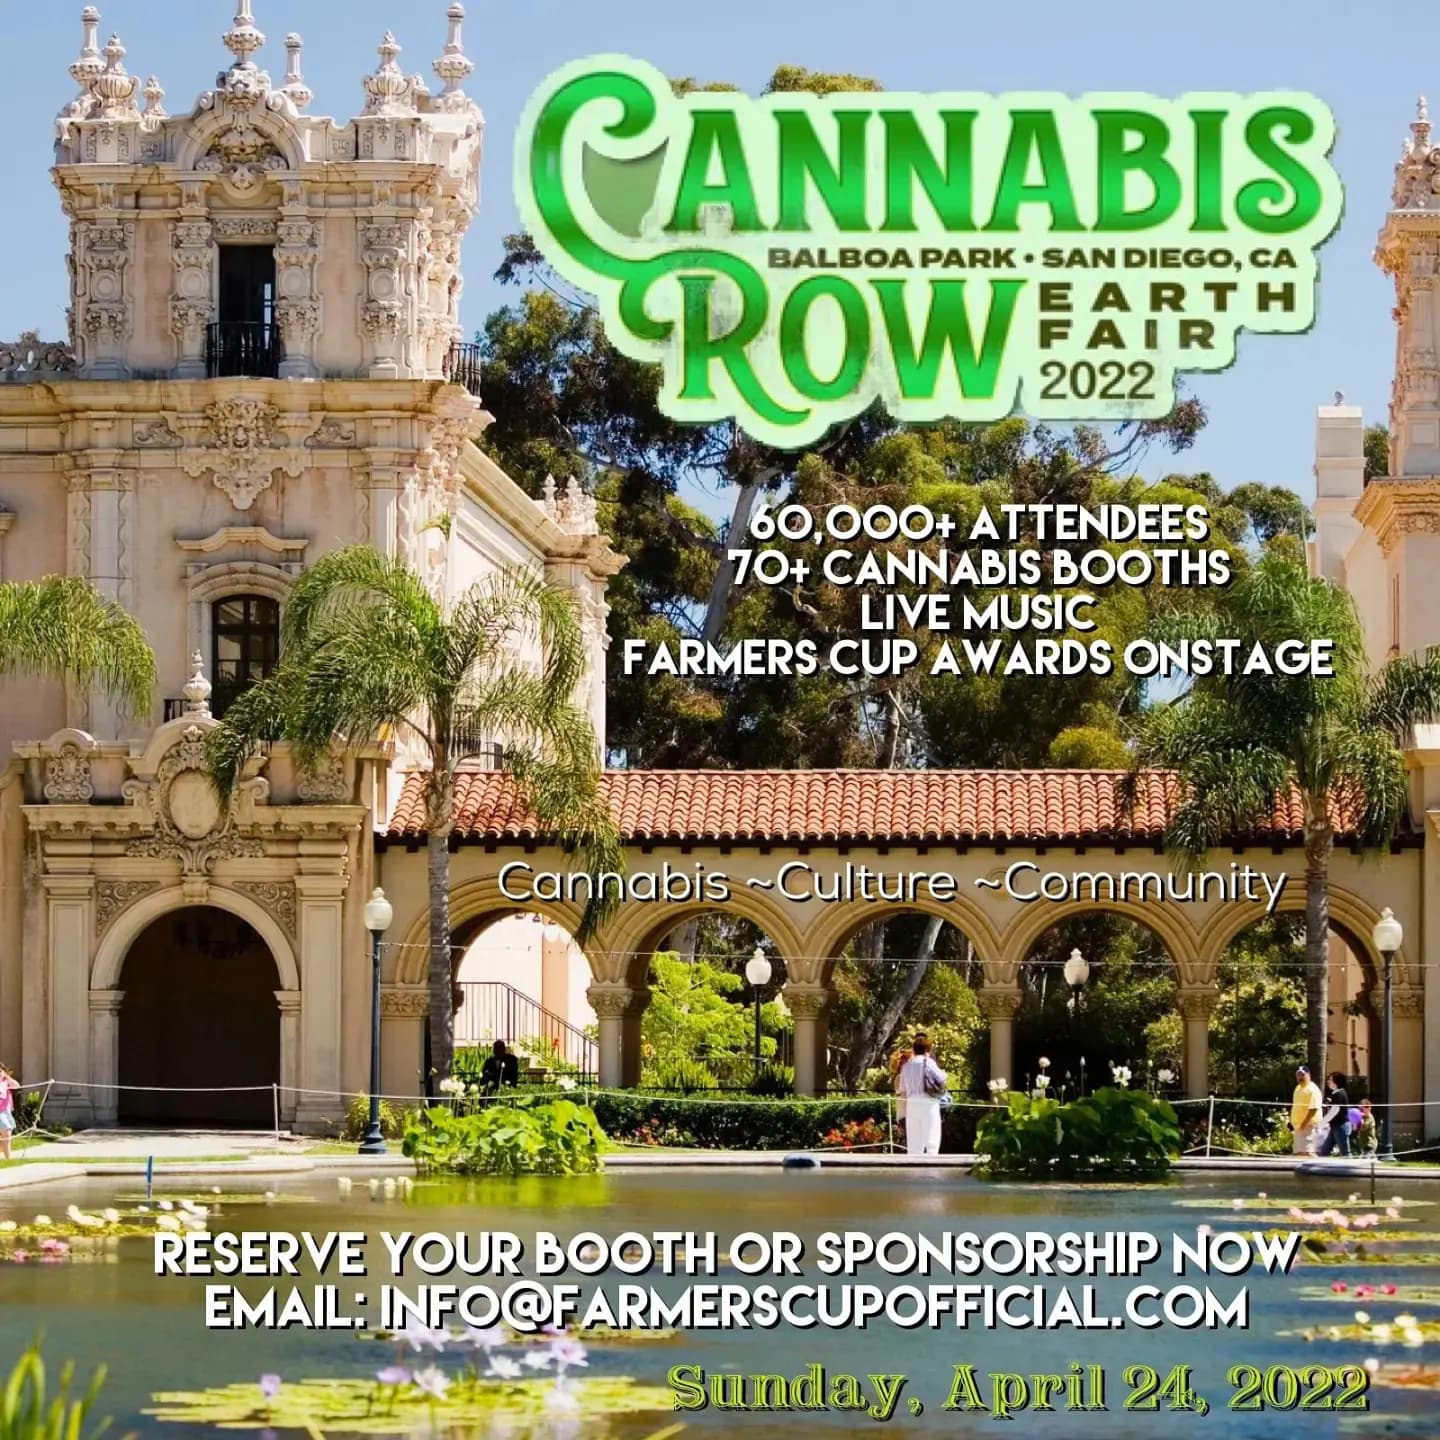 Cannabis Row 2022 Balboa Park San Diego